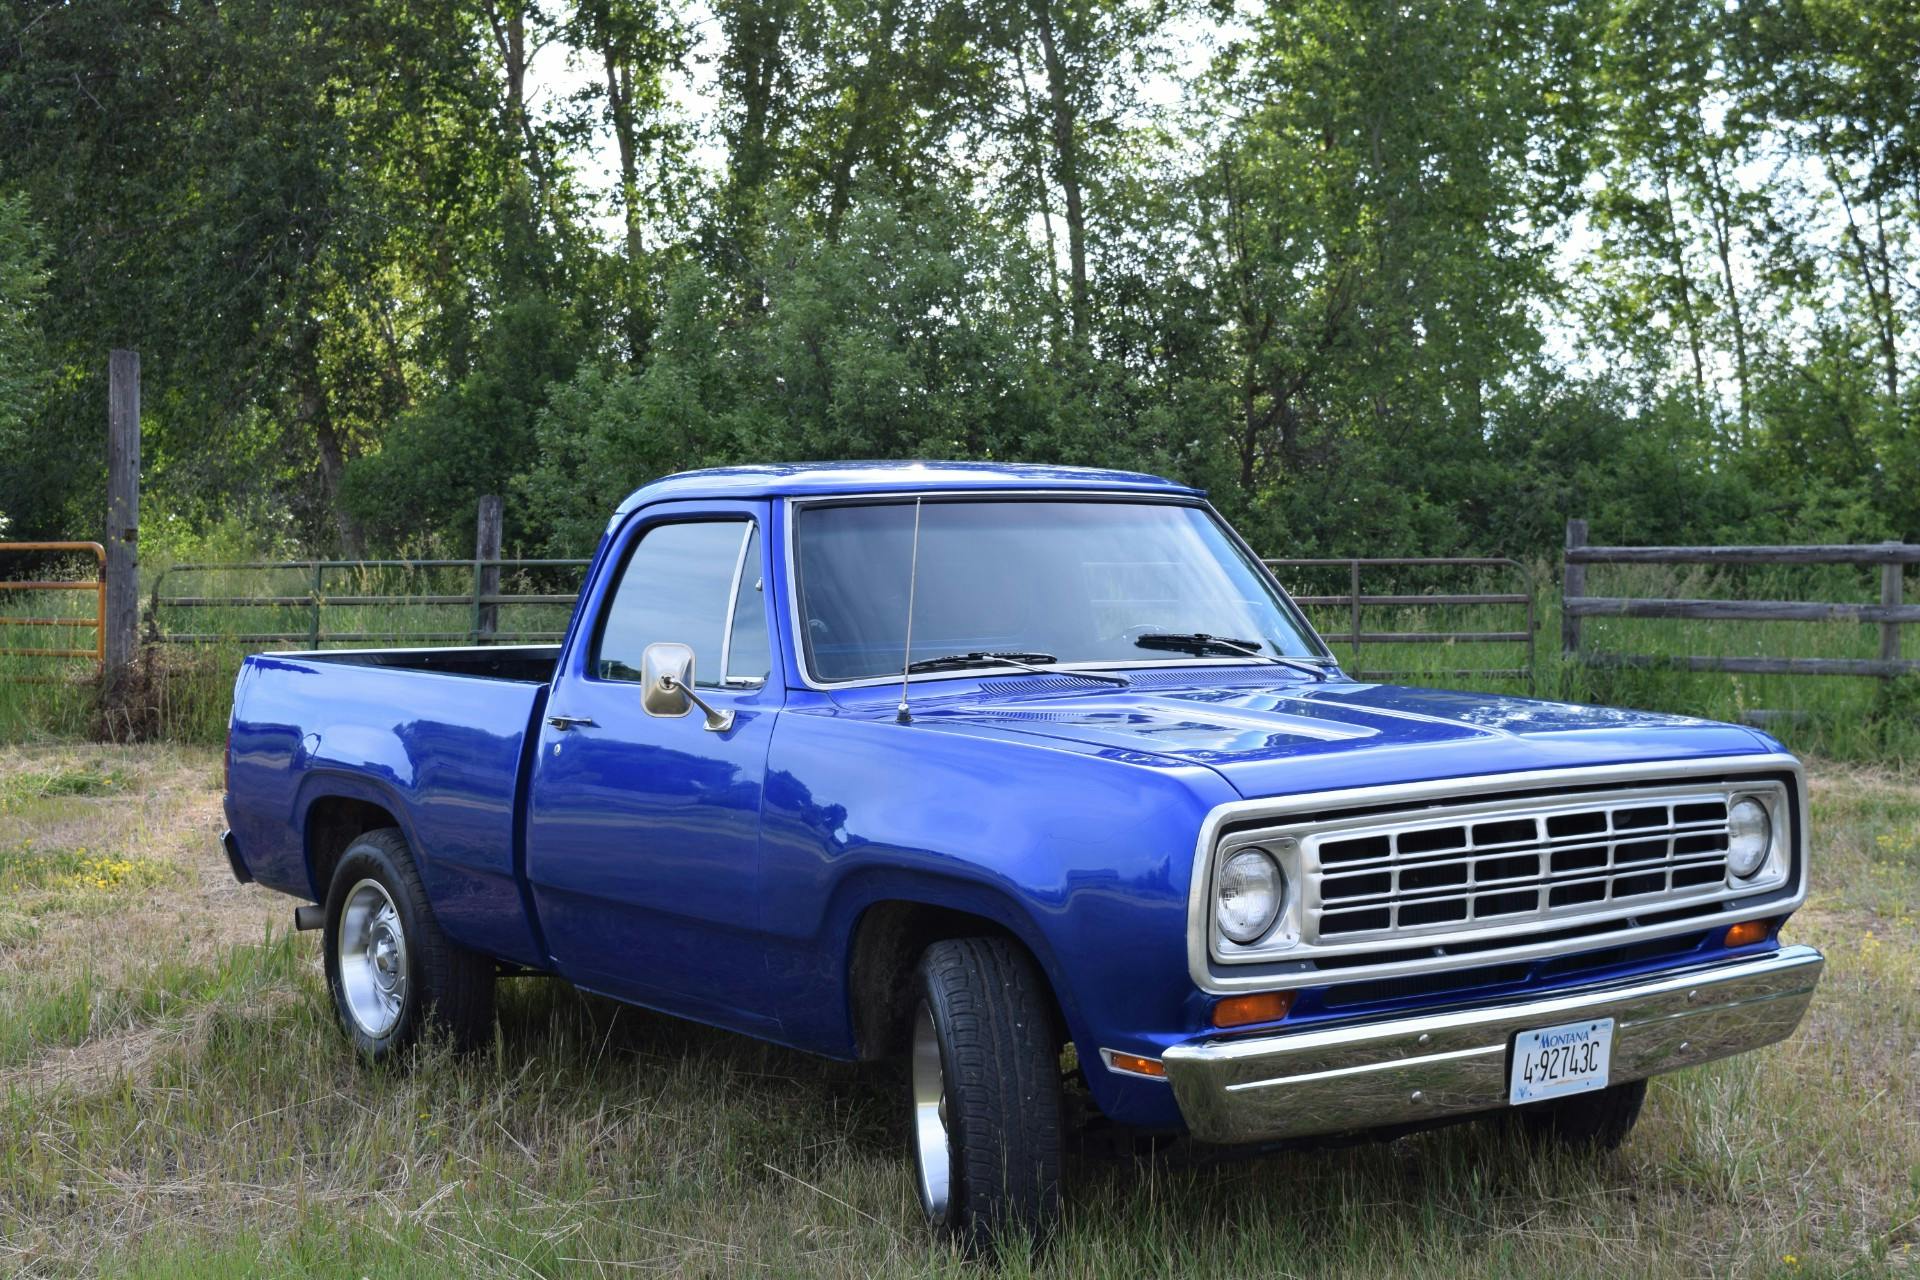 Dodge-D100-1975-2024-02-23T16:18:20.601Z